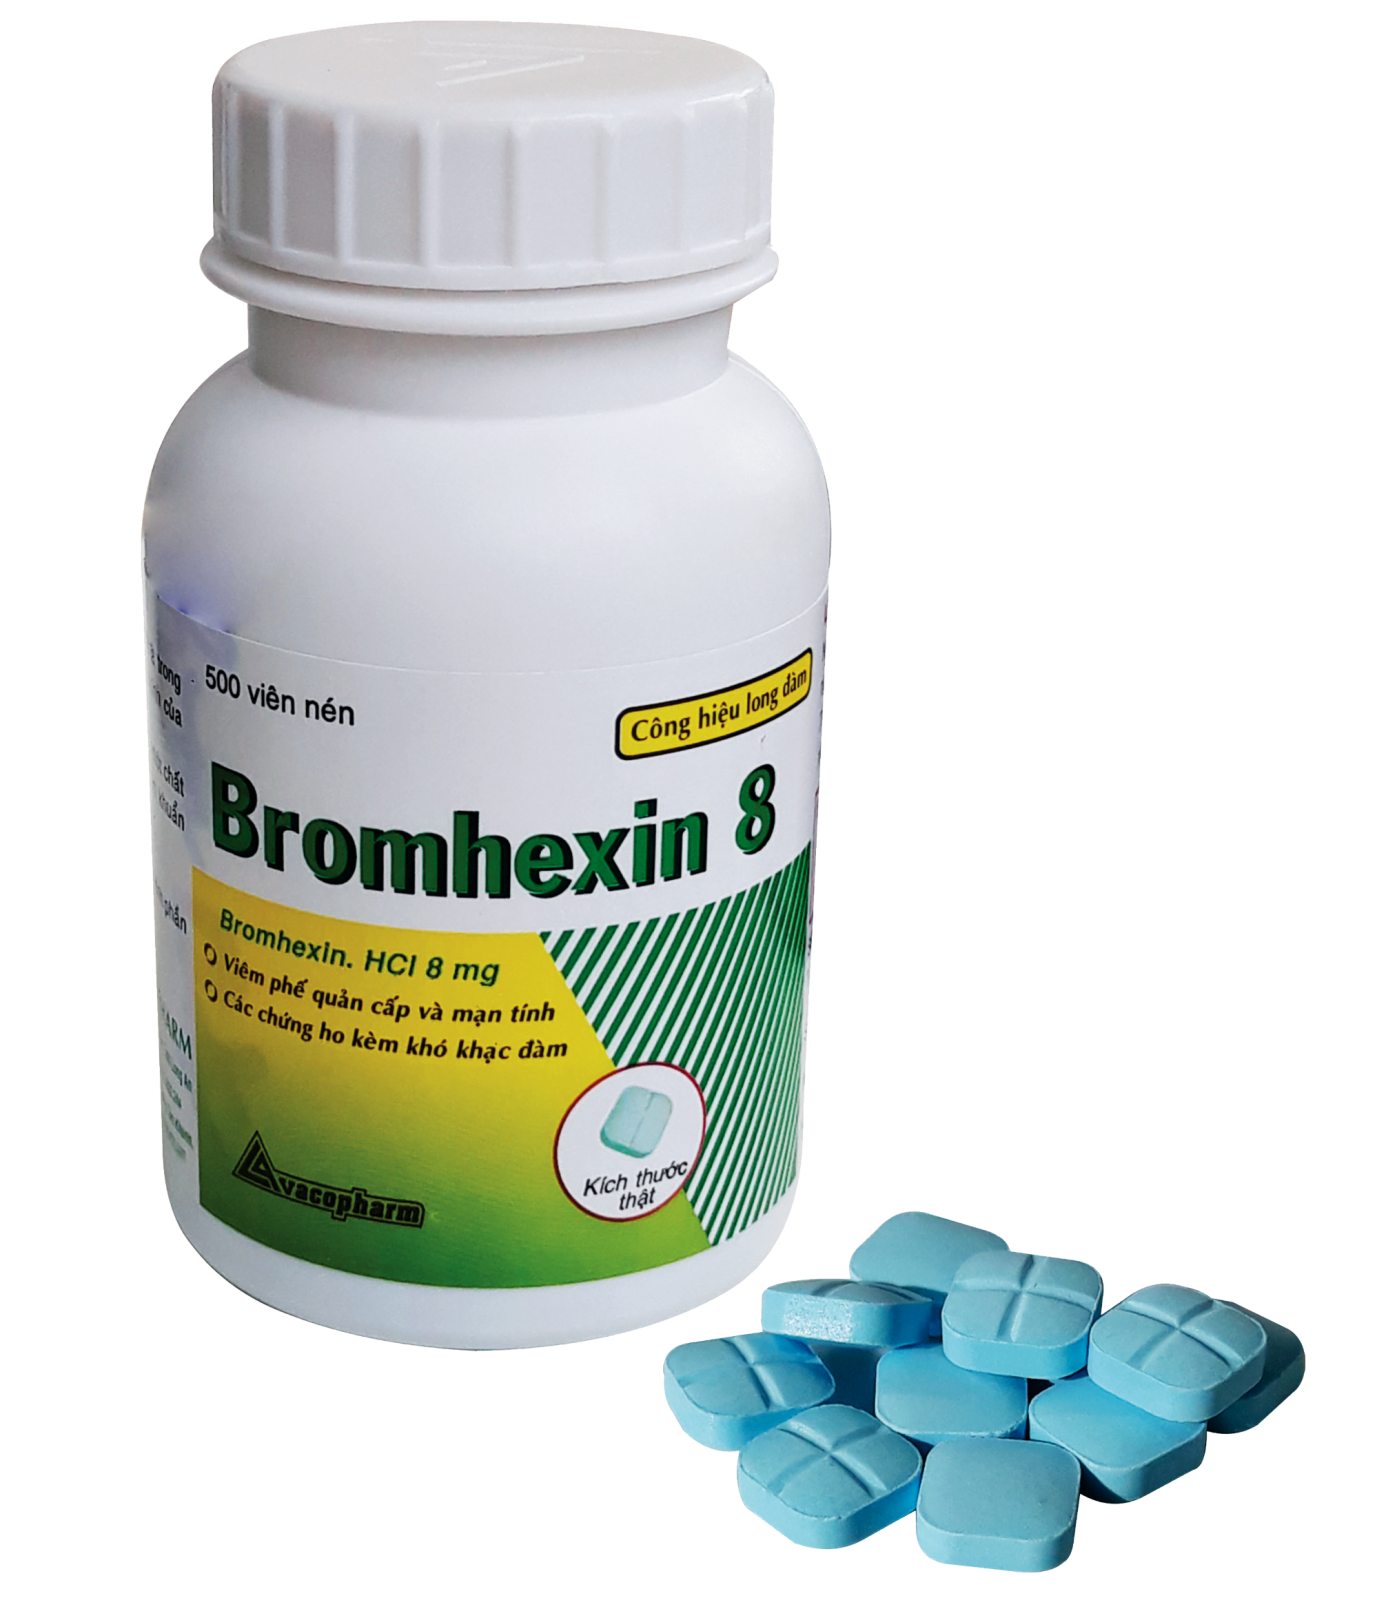 Điều kiện mua thuốc bromhexin hydroclorid 8mg như nào?
